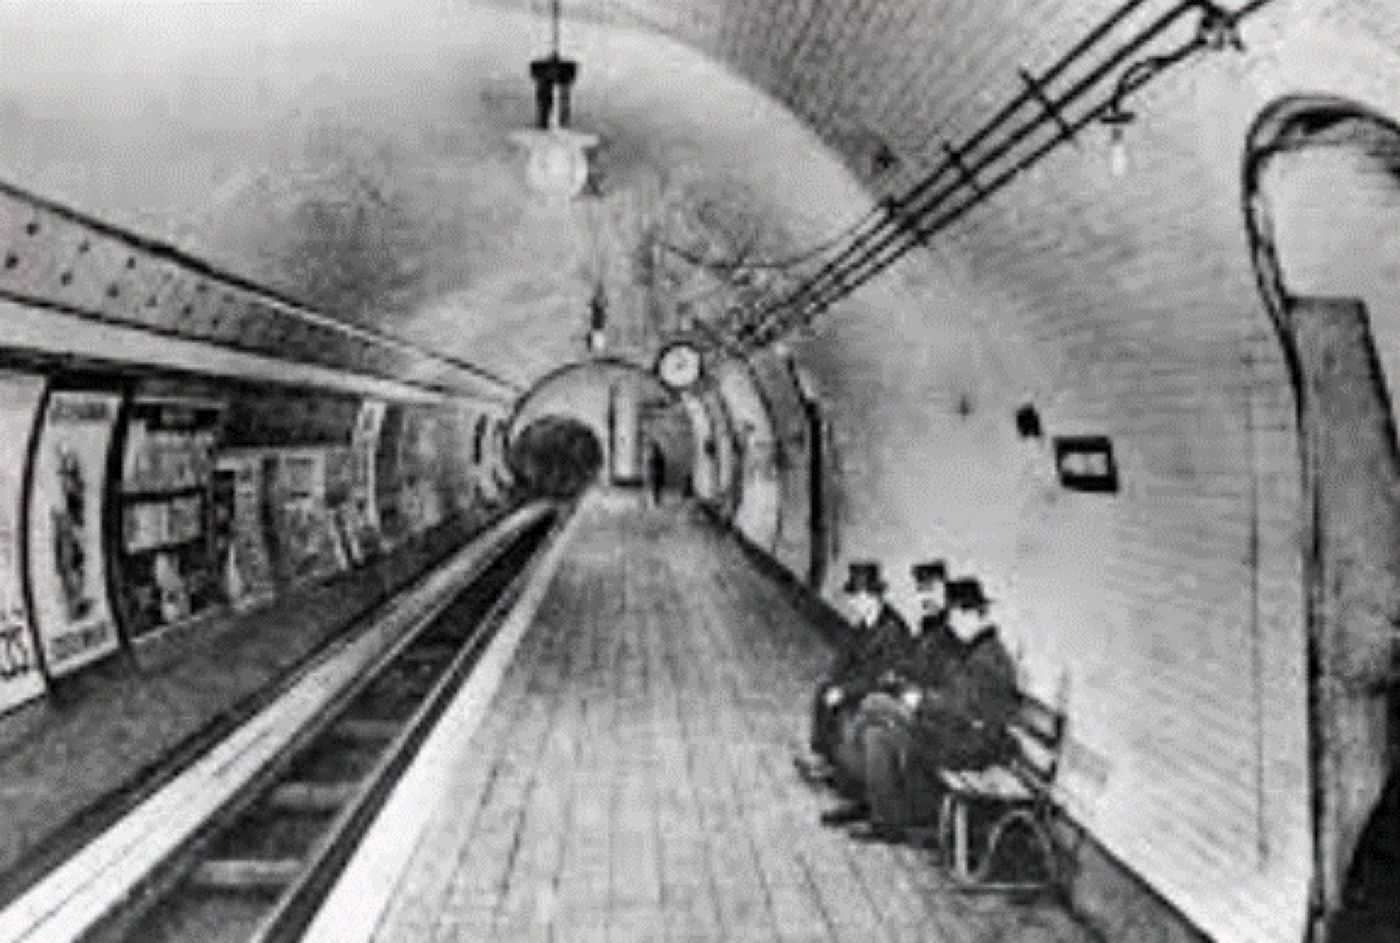 Primul metrou din lume a fost inaugurat în Marea Britanie. A fost salutat ca „marele triumf ingineresc”